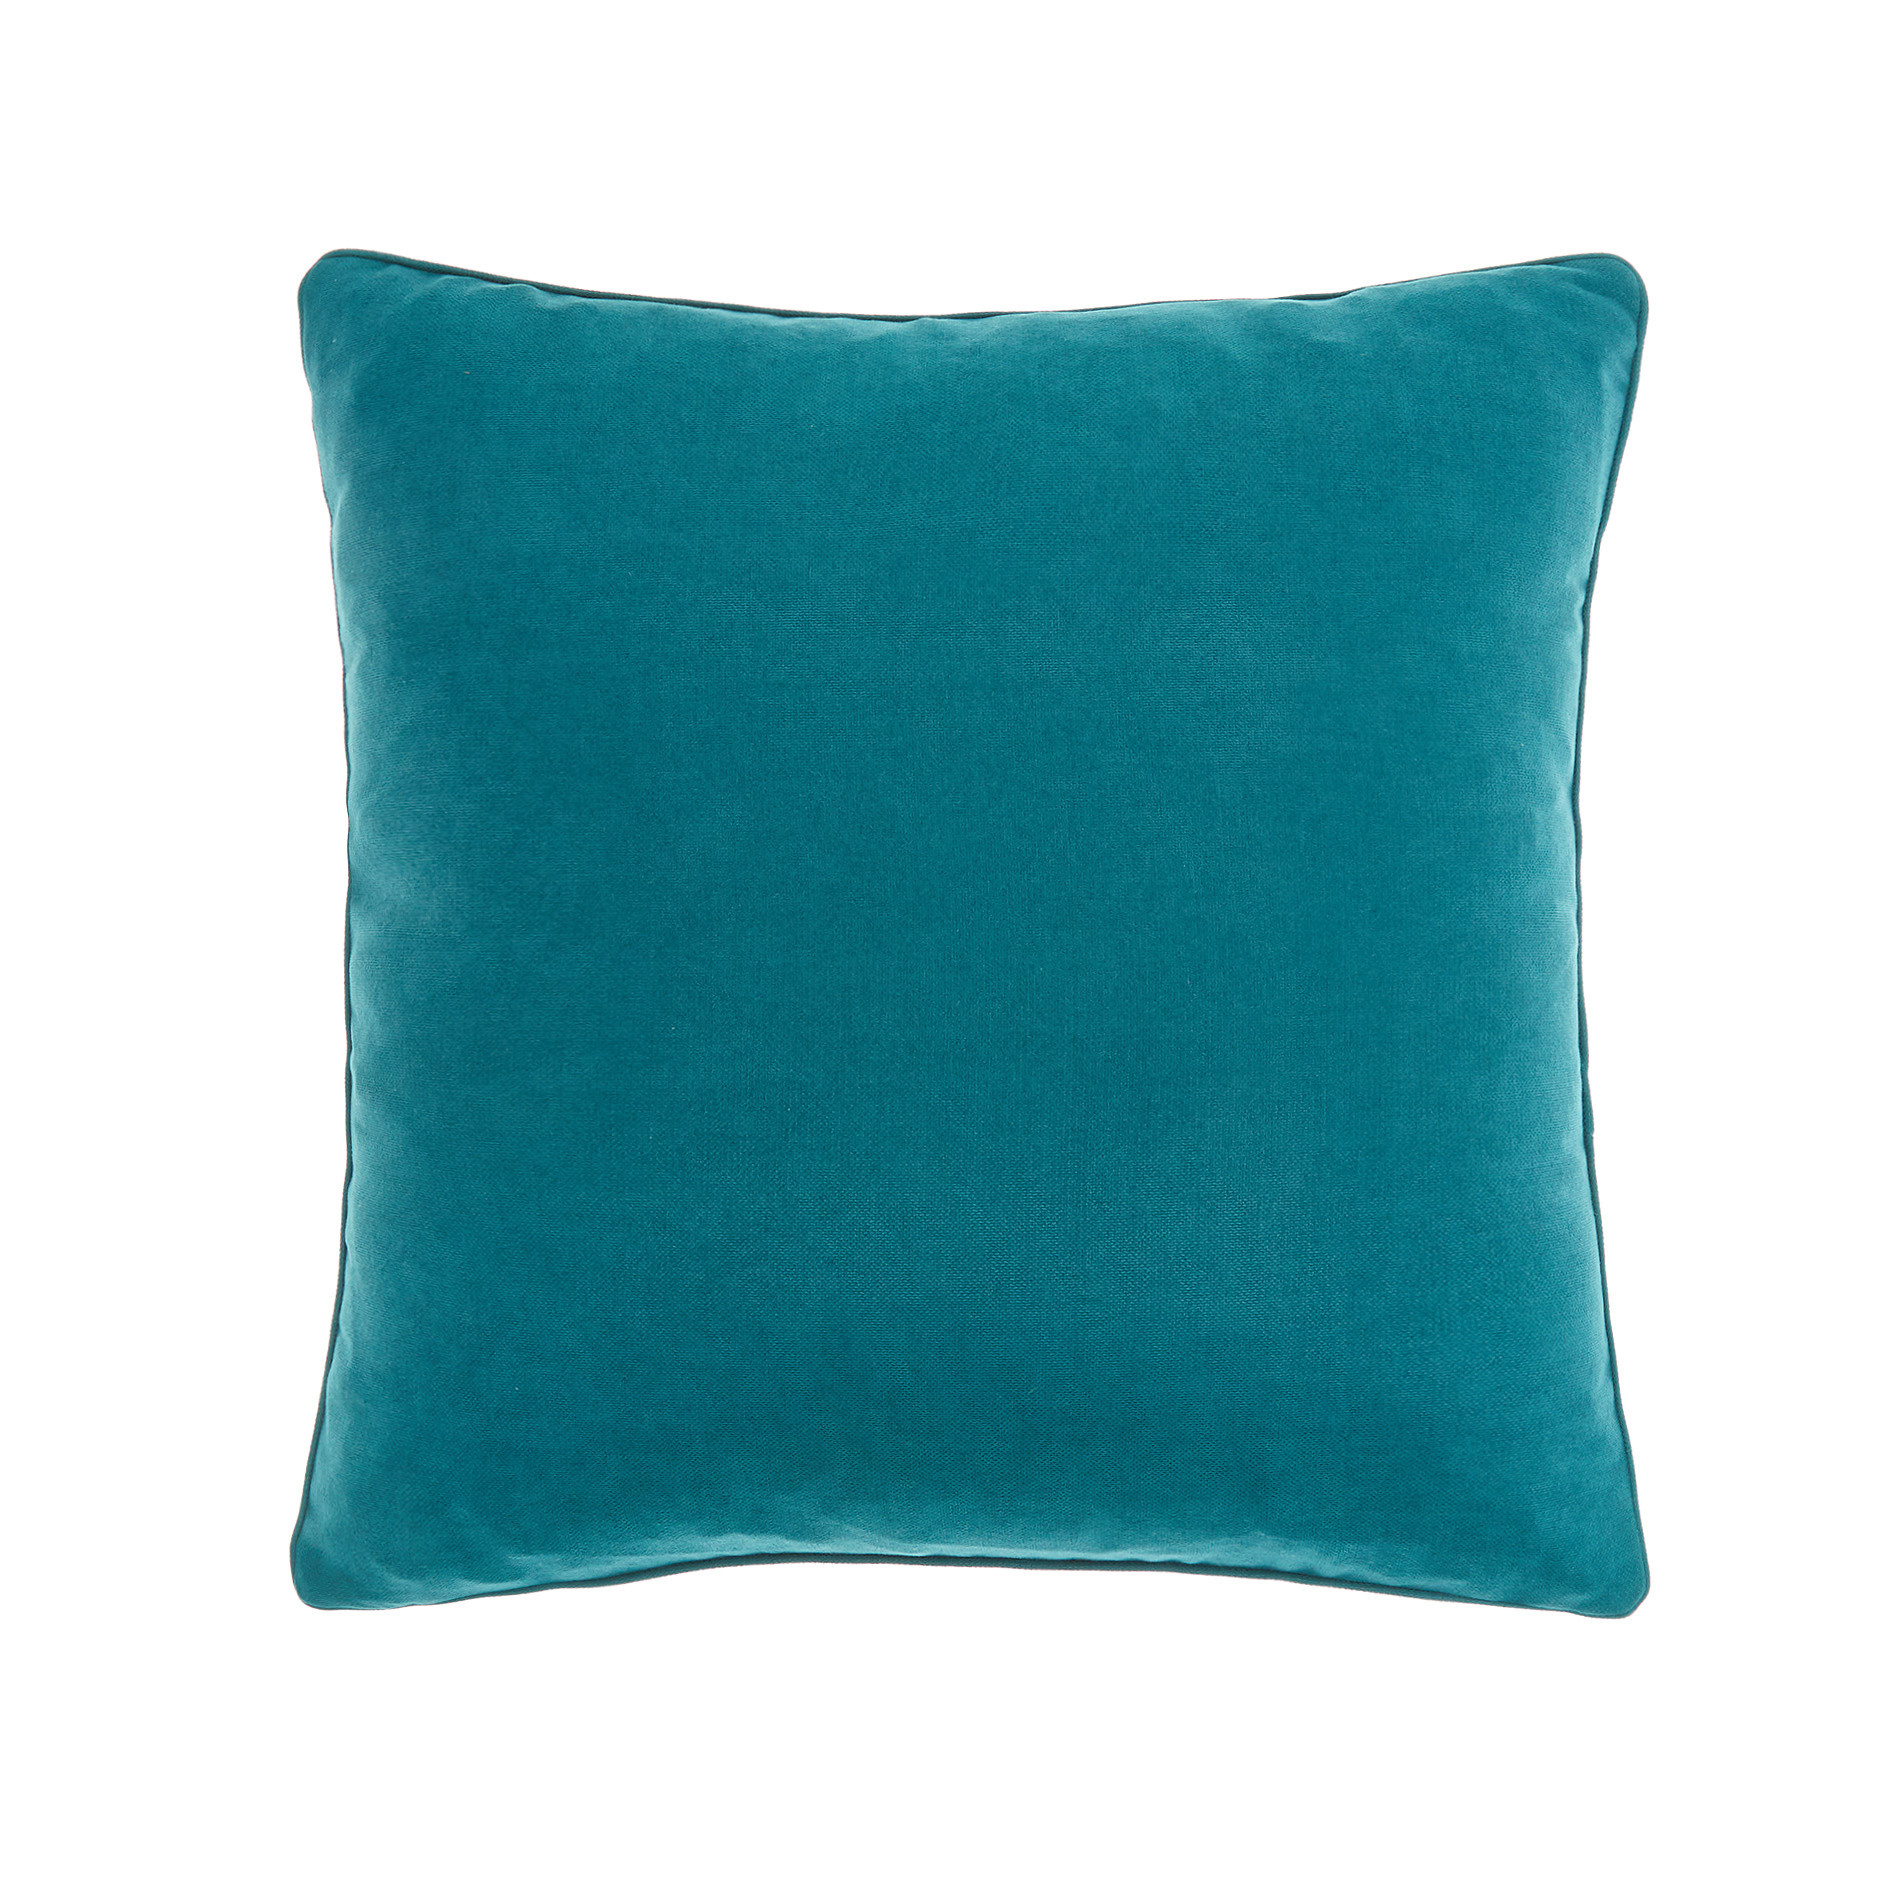 Однотонная меланжевая подушка Coincasa, зелено-голубой